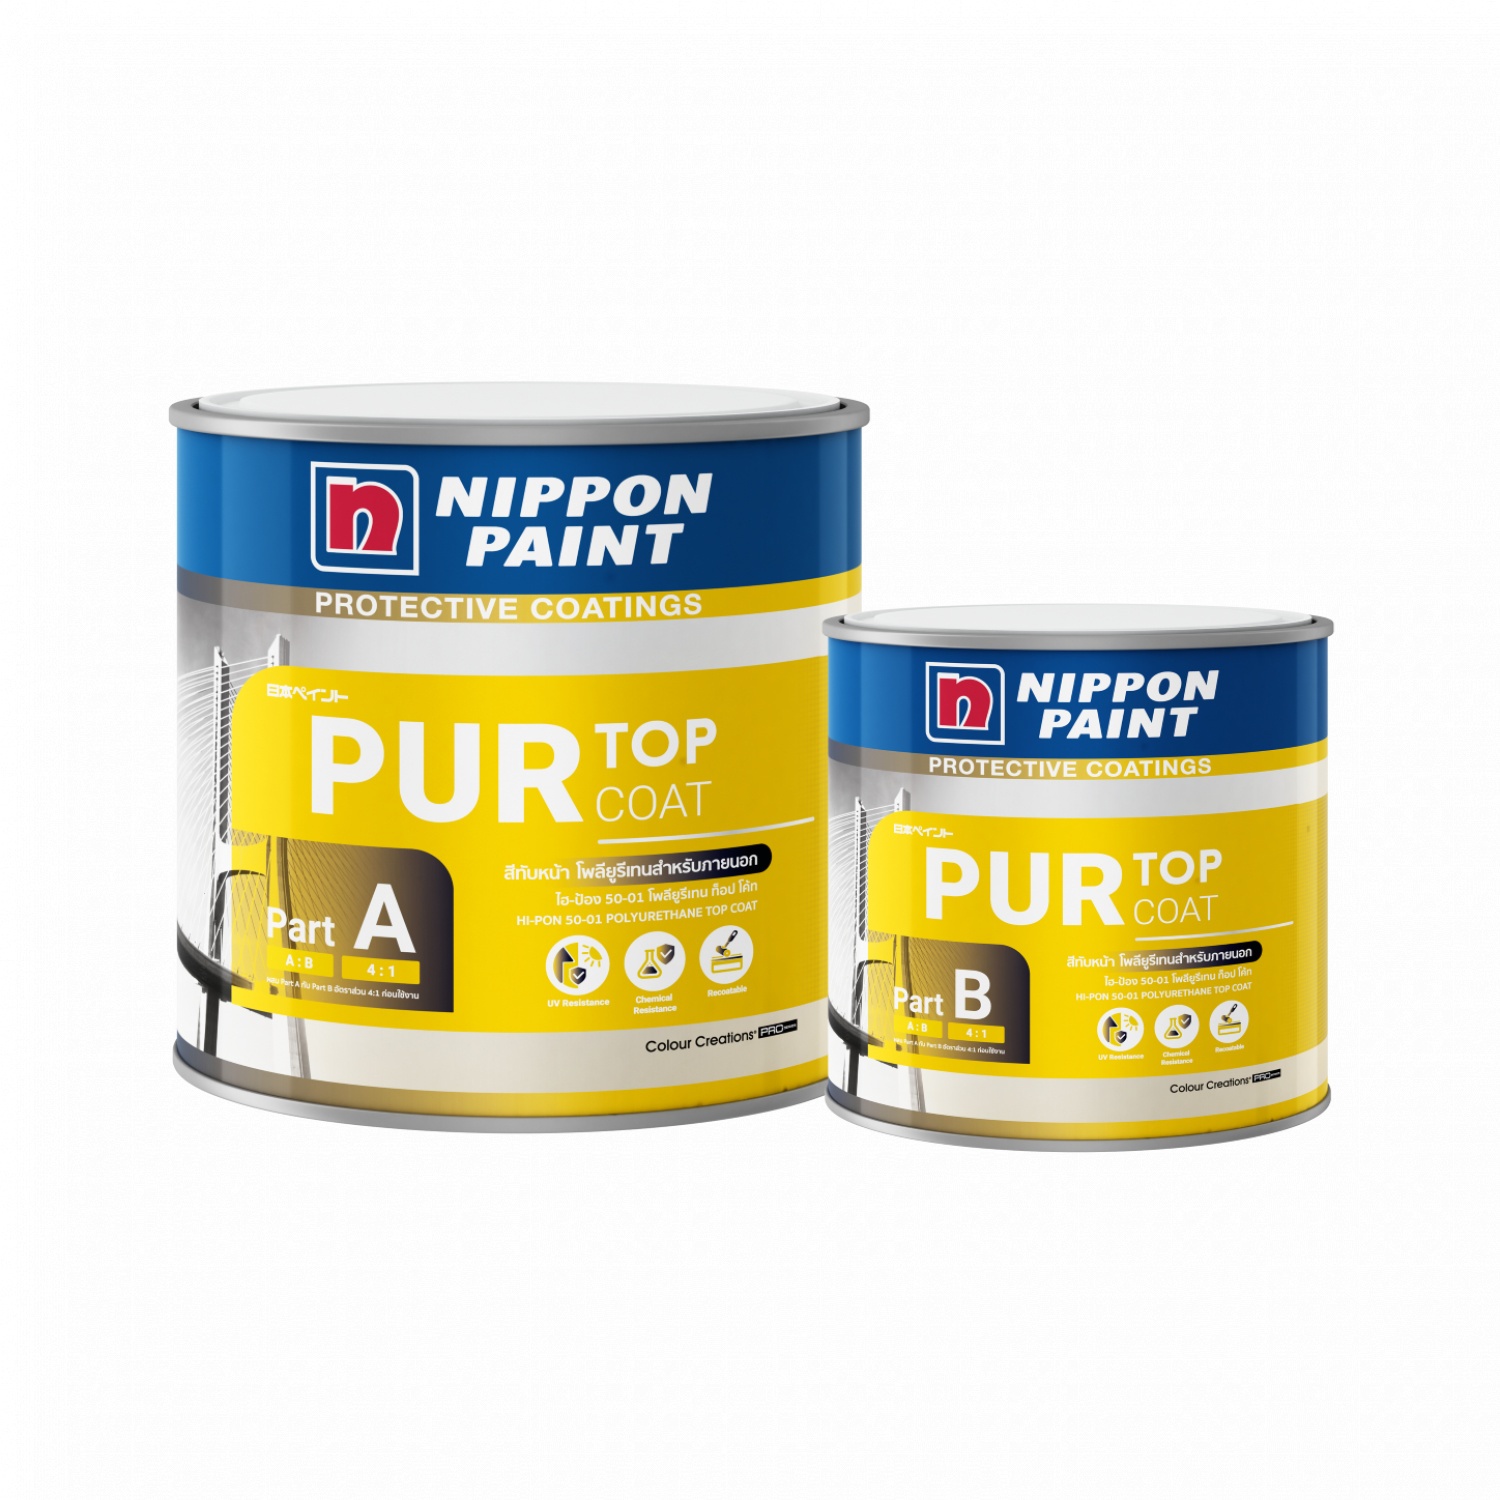 NIPPON PAINT สีอุตสาหกรรม ประเภทสีทับหน้าภายนอก HI-PON 50-01 5010 ขนาด 1 แกลลอน สีน้ำเงิน